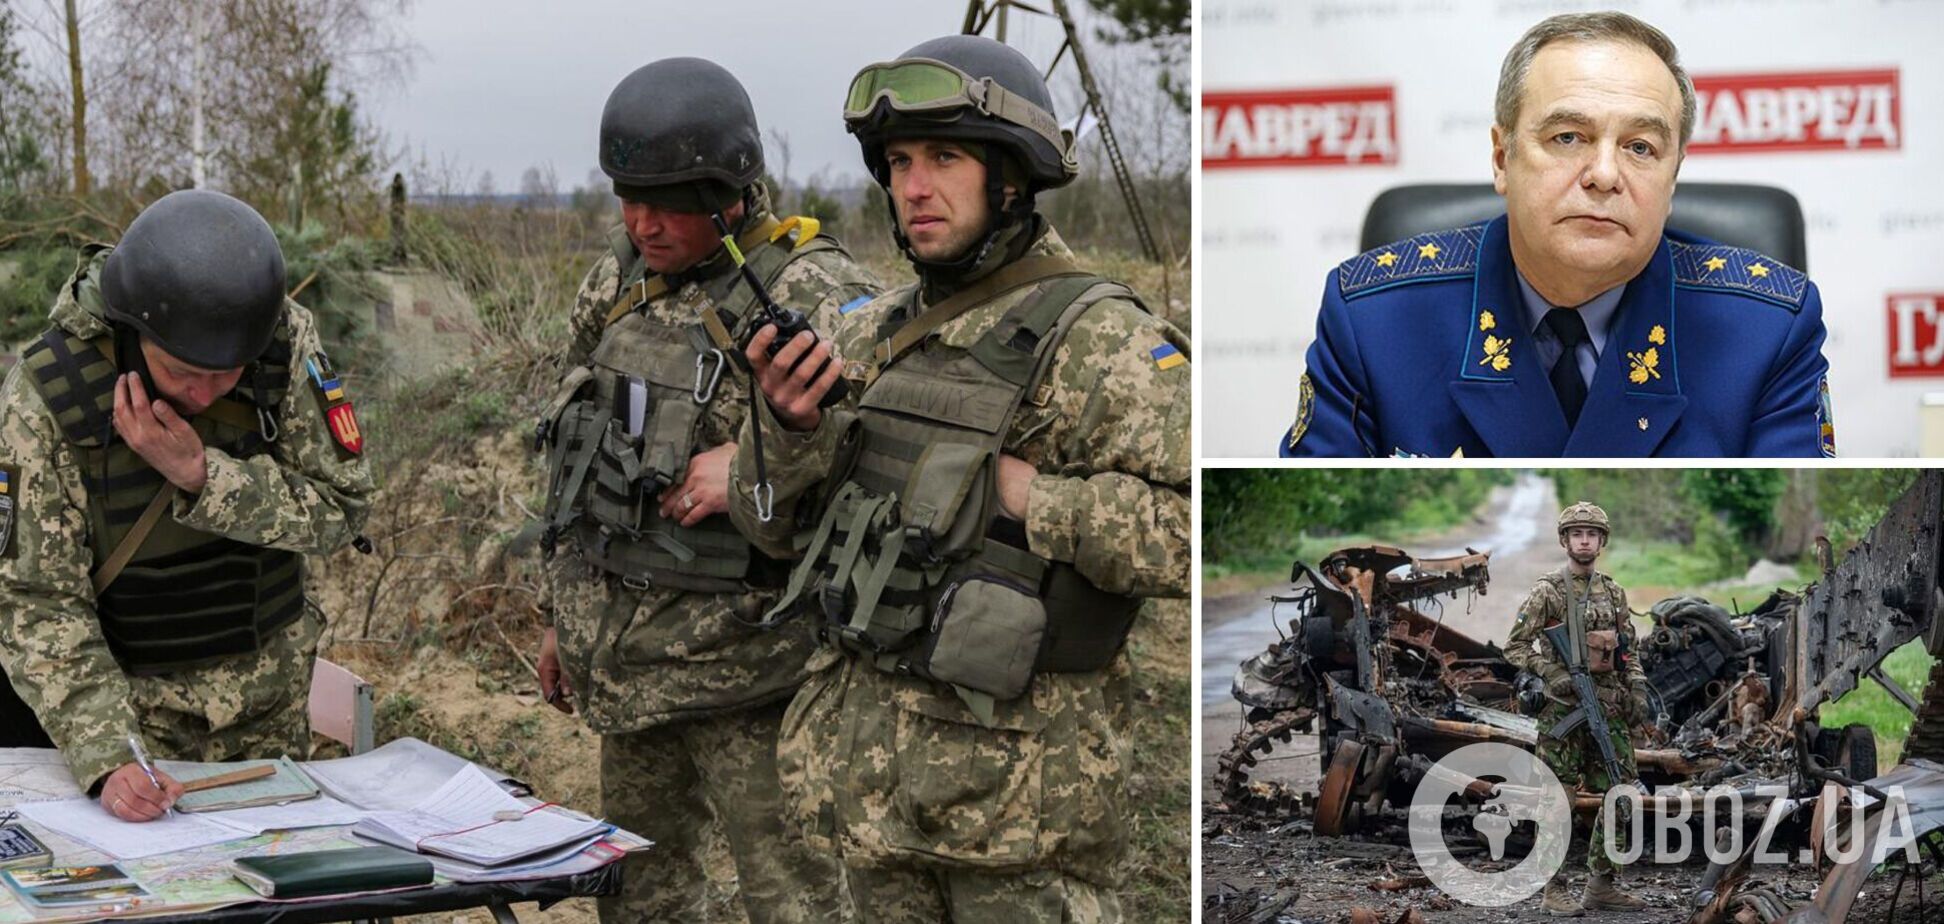 Генерал Романенко: союзники затягивают войну, и это проблема. Интервью